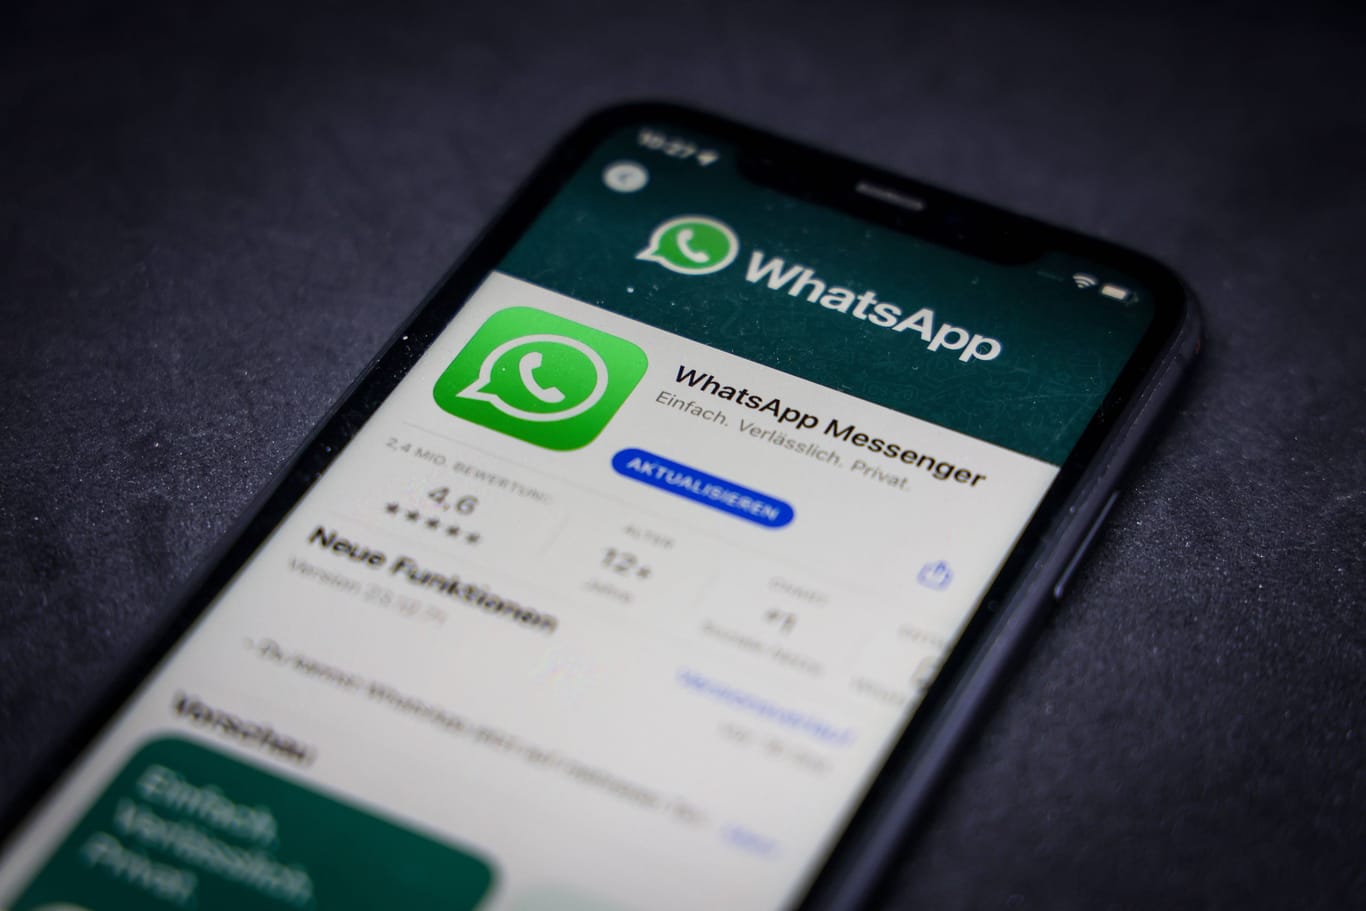 Whatsapp auf einem iPhone (Symbolbild): Der Dienst hatte am Freitagabend weltweit Probleme.